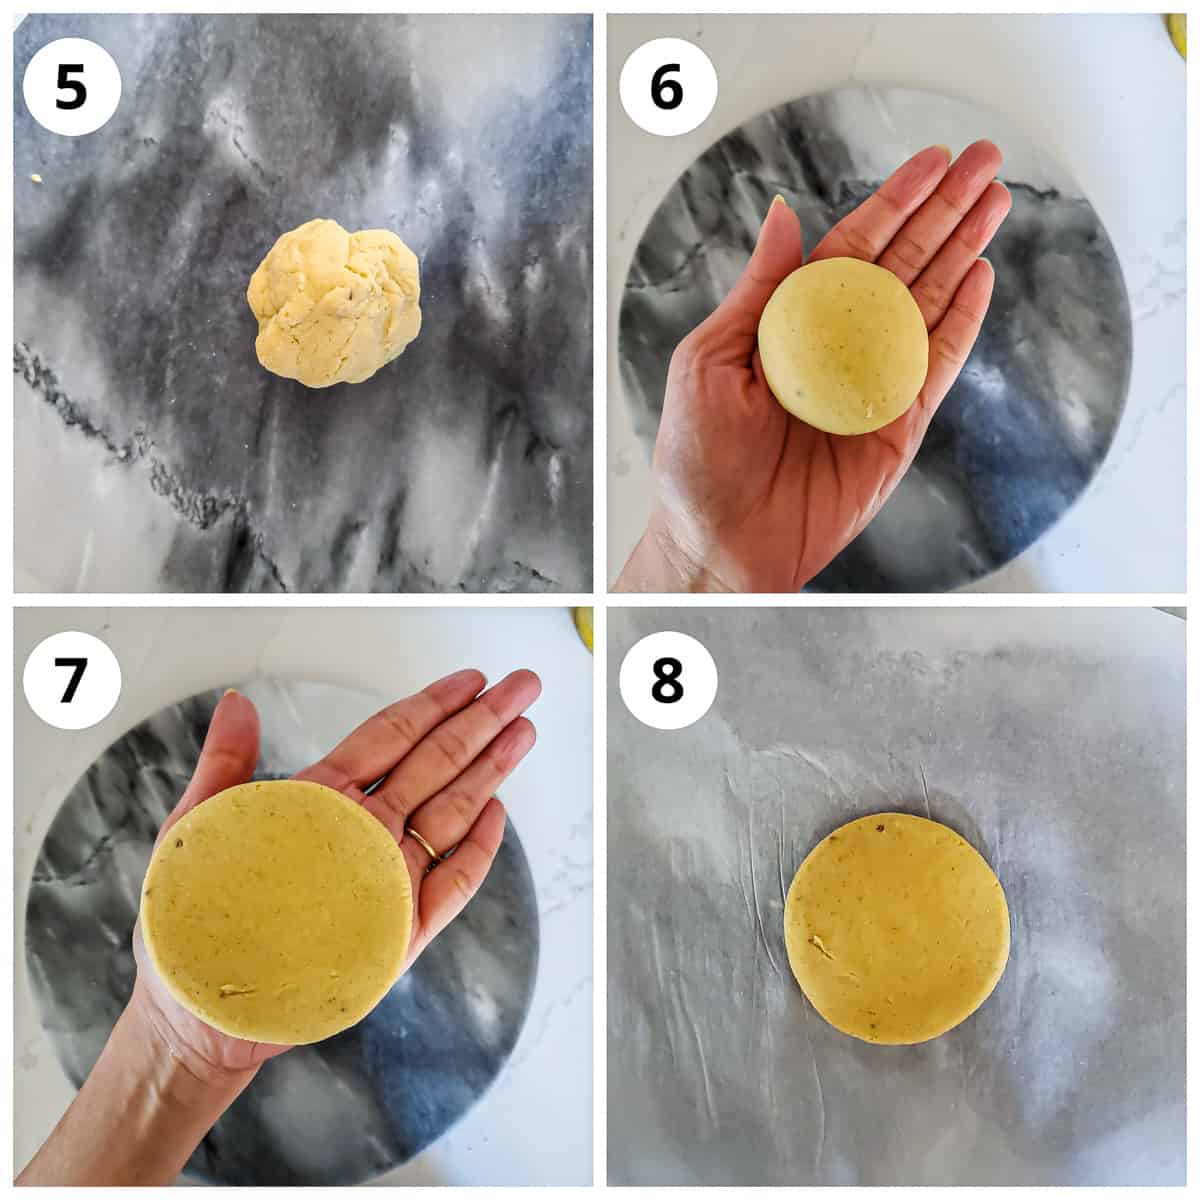 Steps for makki roti dough to make a smooth ball